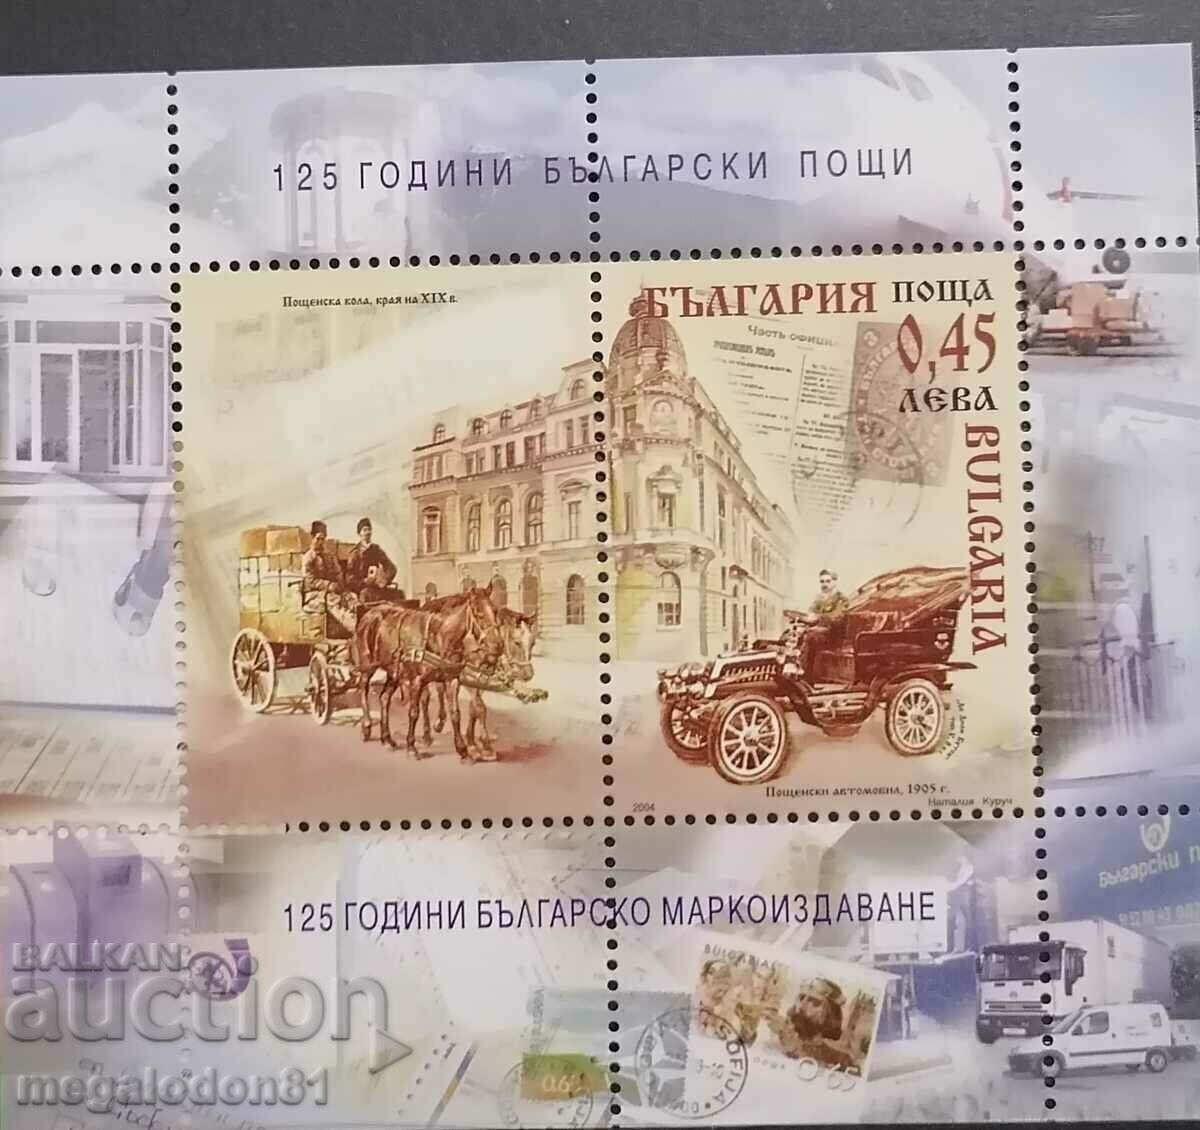 Bulgaria - 125 de ani Oficiul poștal bulgar